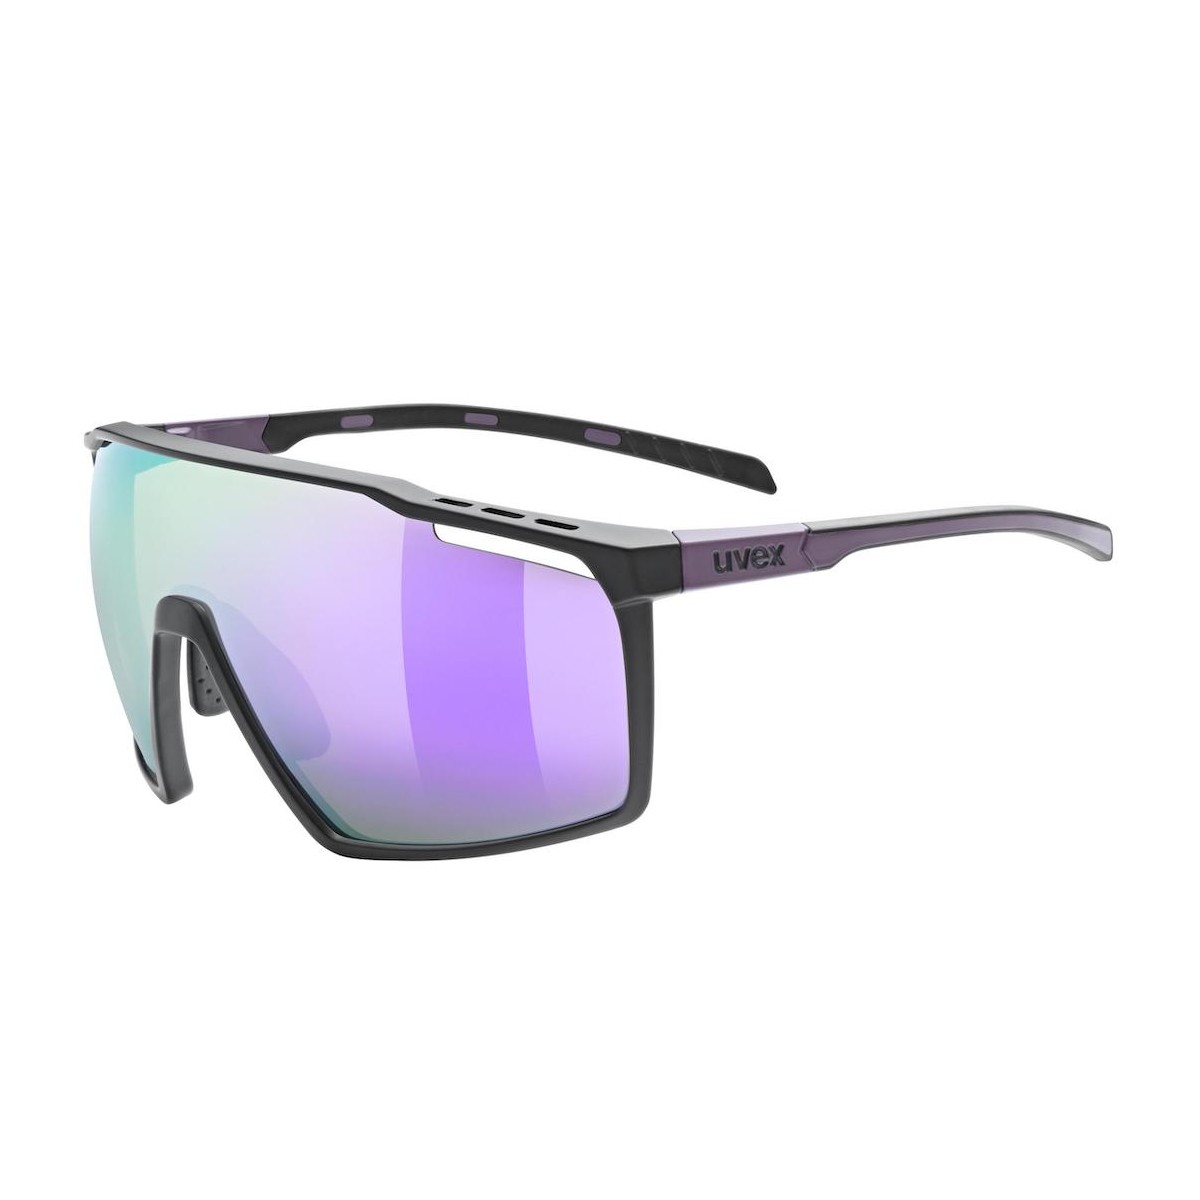 UVEX MTN PERFORM sunglasses - black/purple